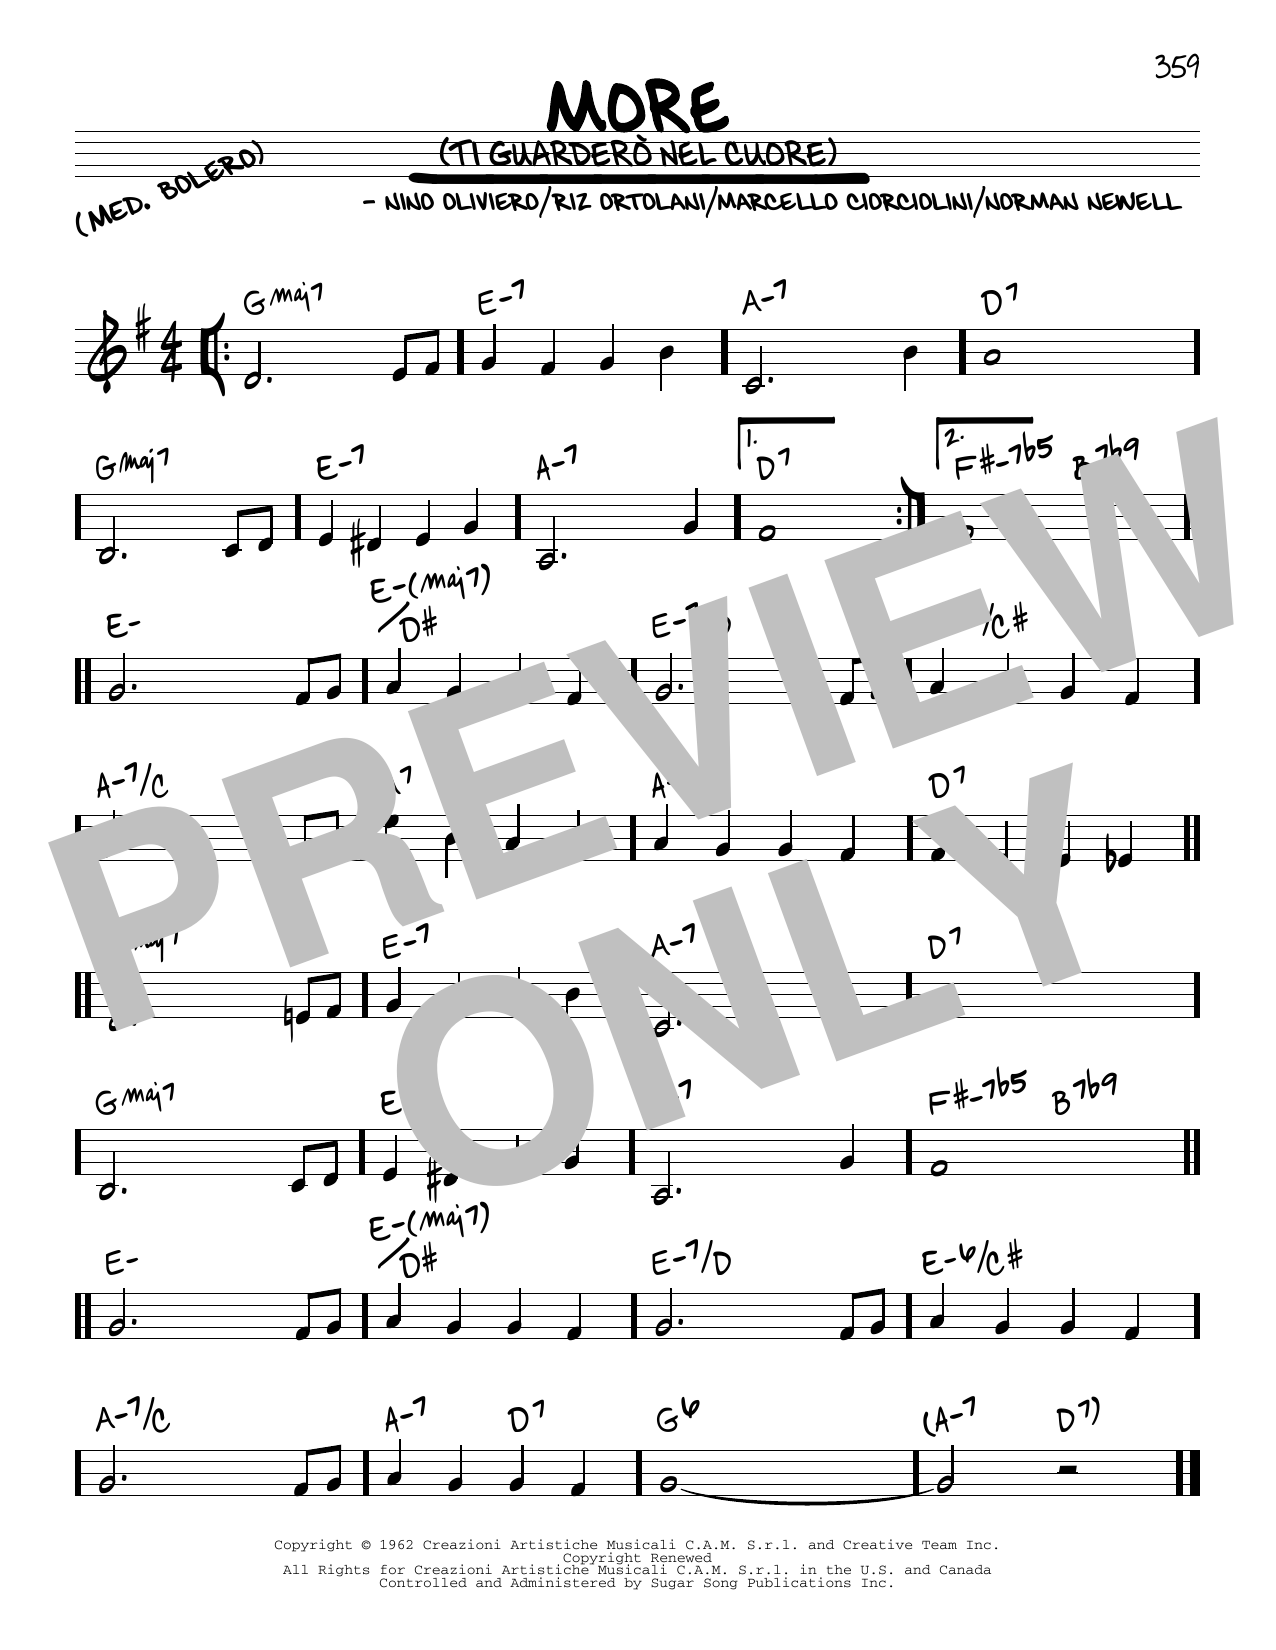 Download Riz Ortolani More (Ti Guardero Nel Cuore) Sheet Music and learn how to play Piano PDF digital score in minutes